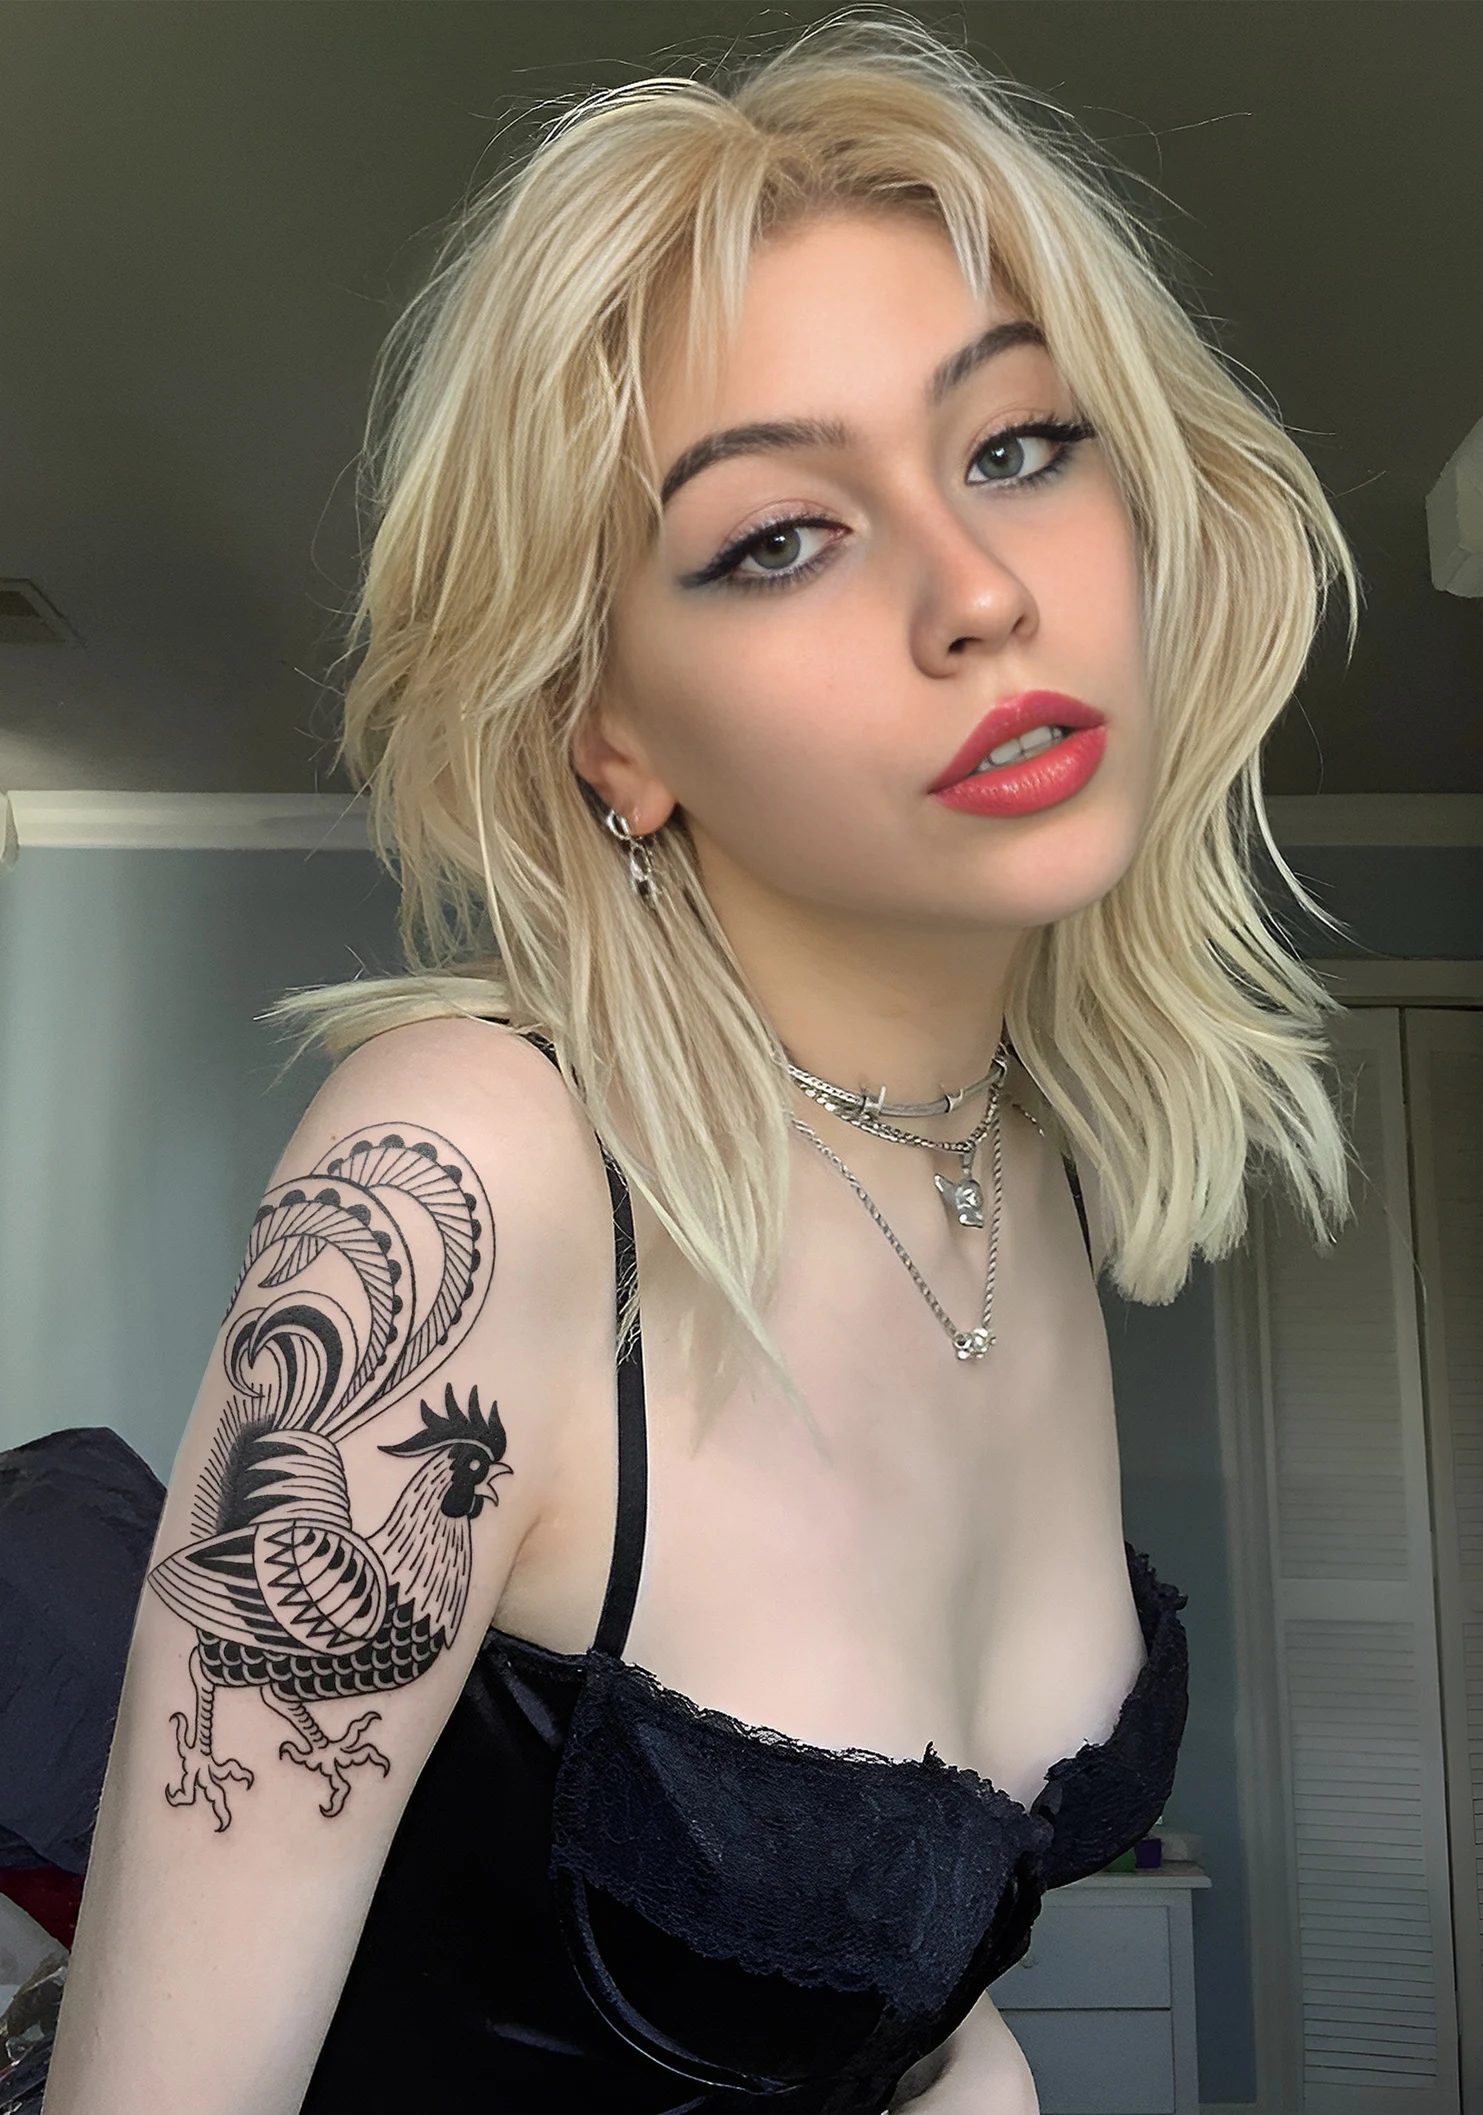 Una modelo con aspecto de borracha, lleva un tatuaje de gallo en el brazo